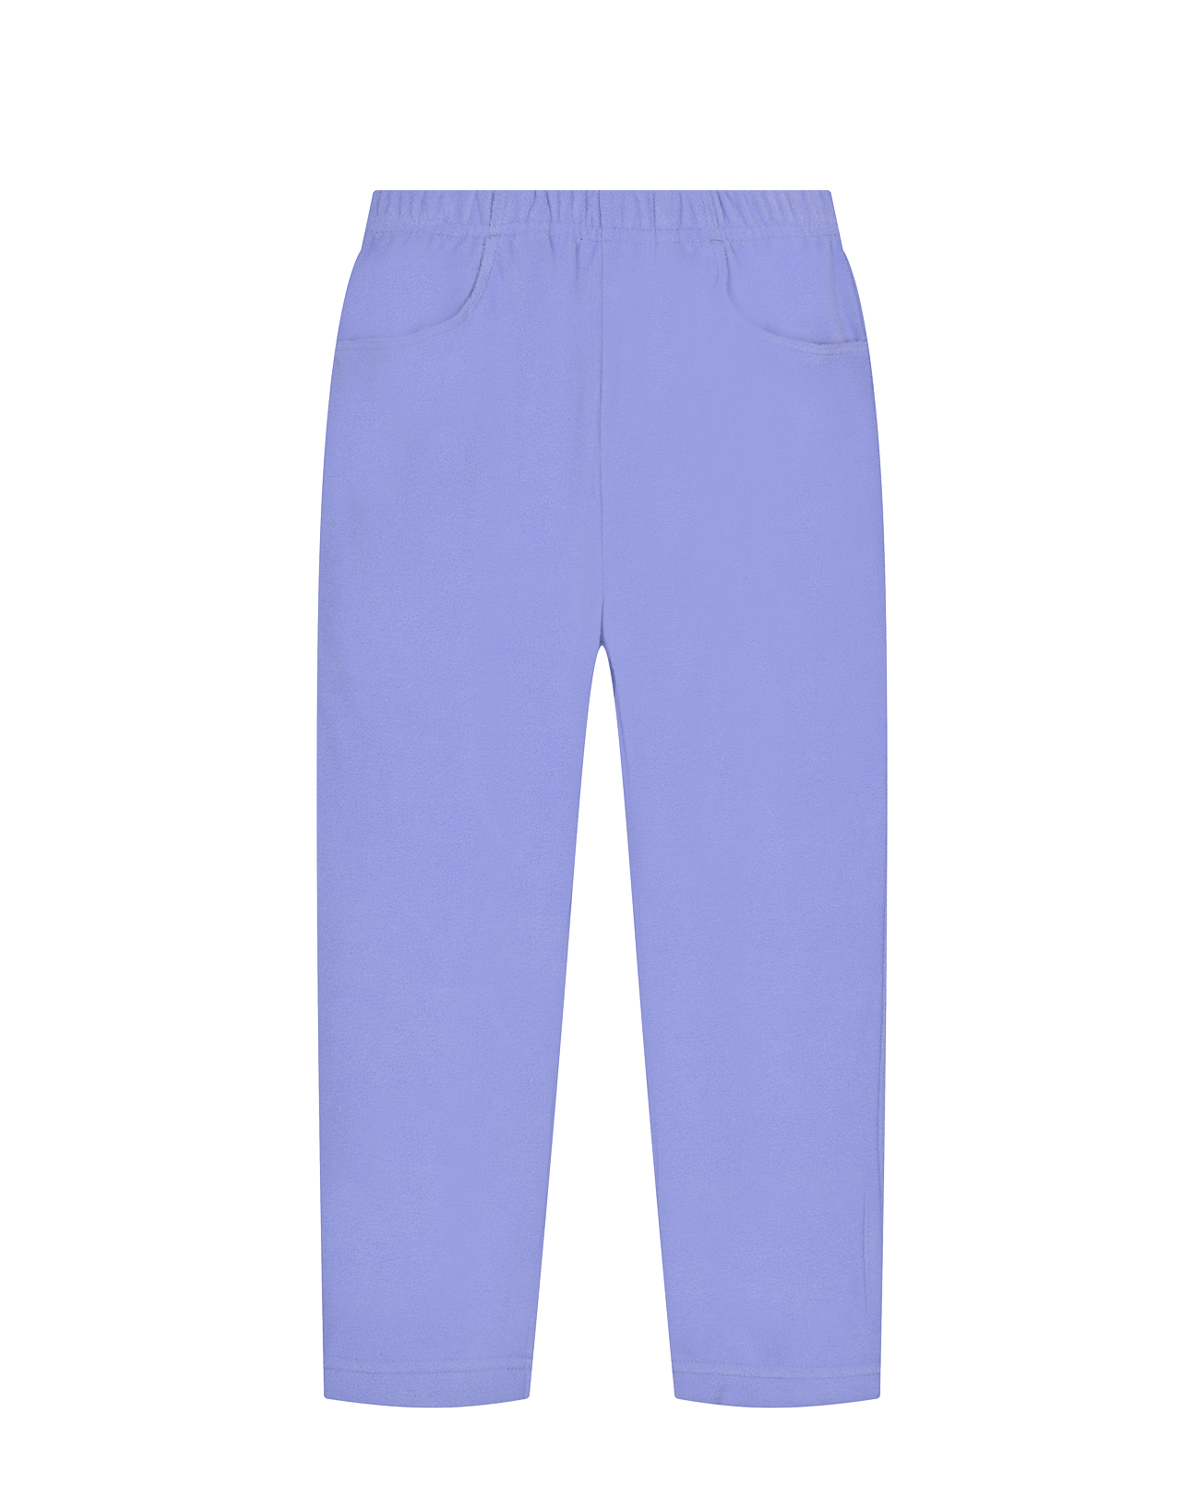 Флисовые брюки лилового цвета Poivre Blanc детские, размер 92